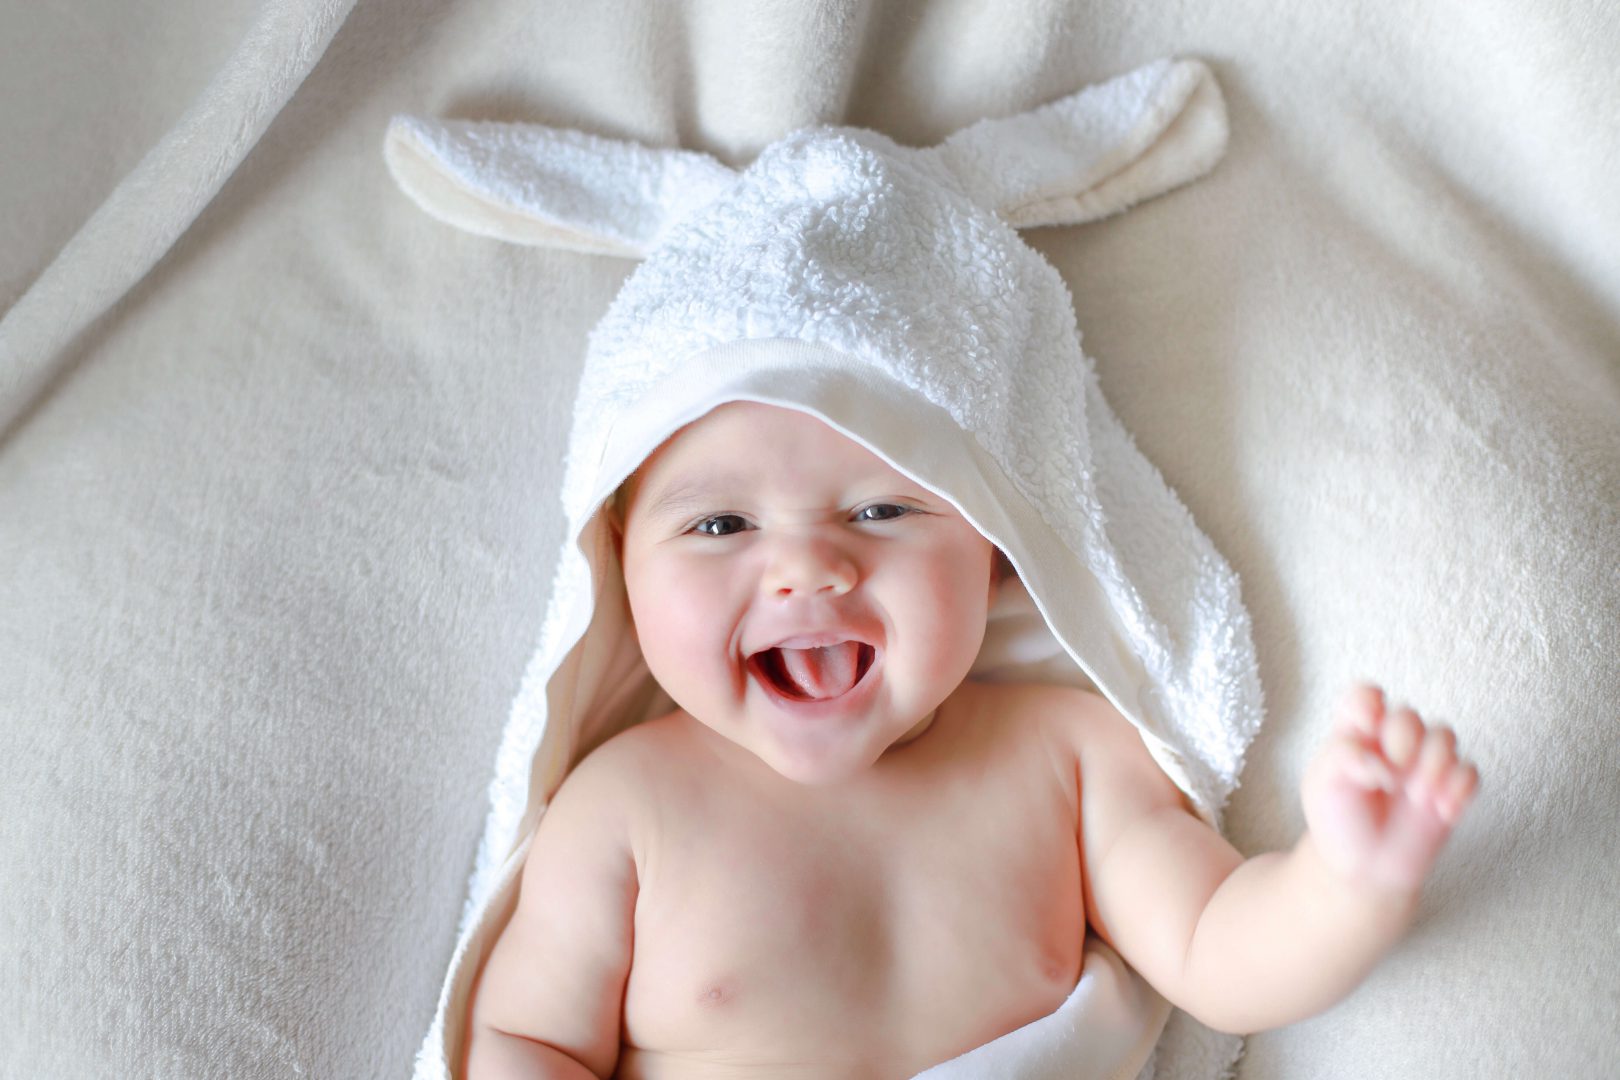 Tăng trưởng và phát triển của trẻ cho đến khi 1 tuổi: 1 ~ 2 tháng tuổi